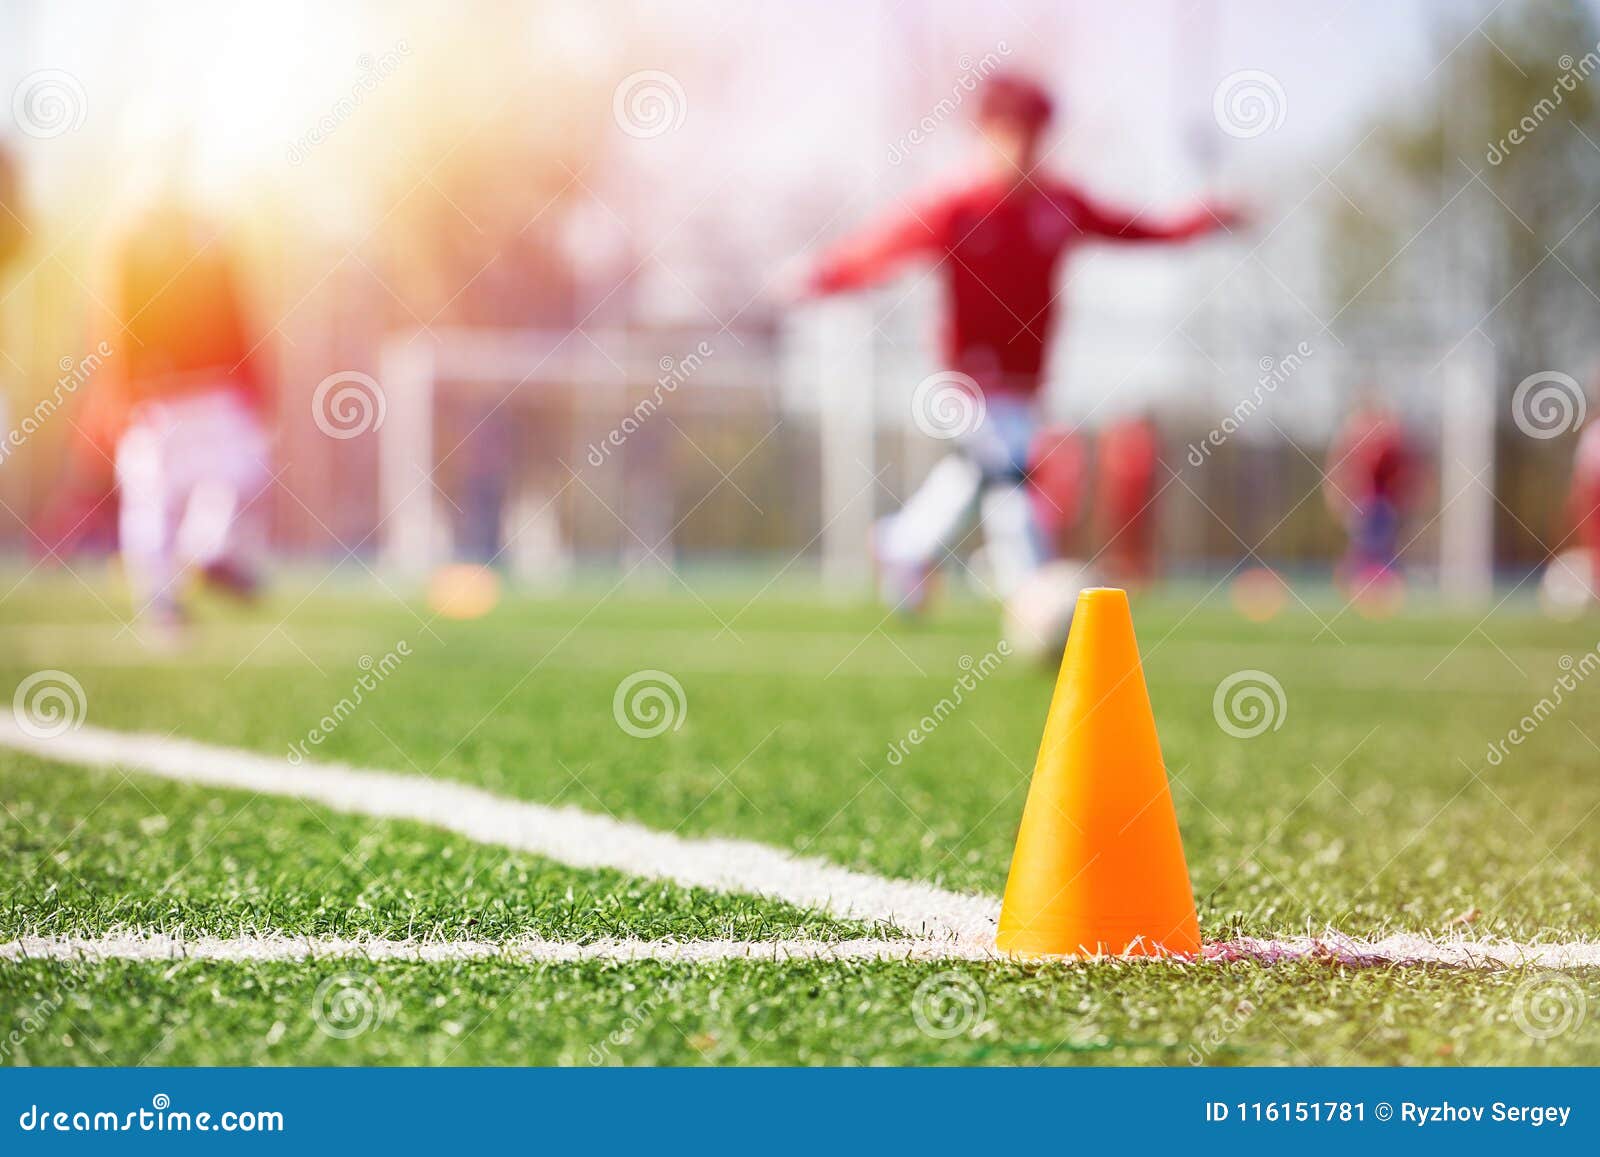 6 x Piesas Conos de Deportes Naranjado Para Cancha de Futbol Practica Deporte 